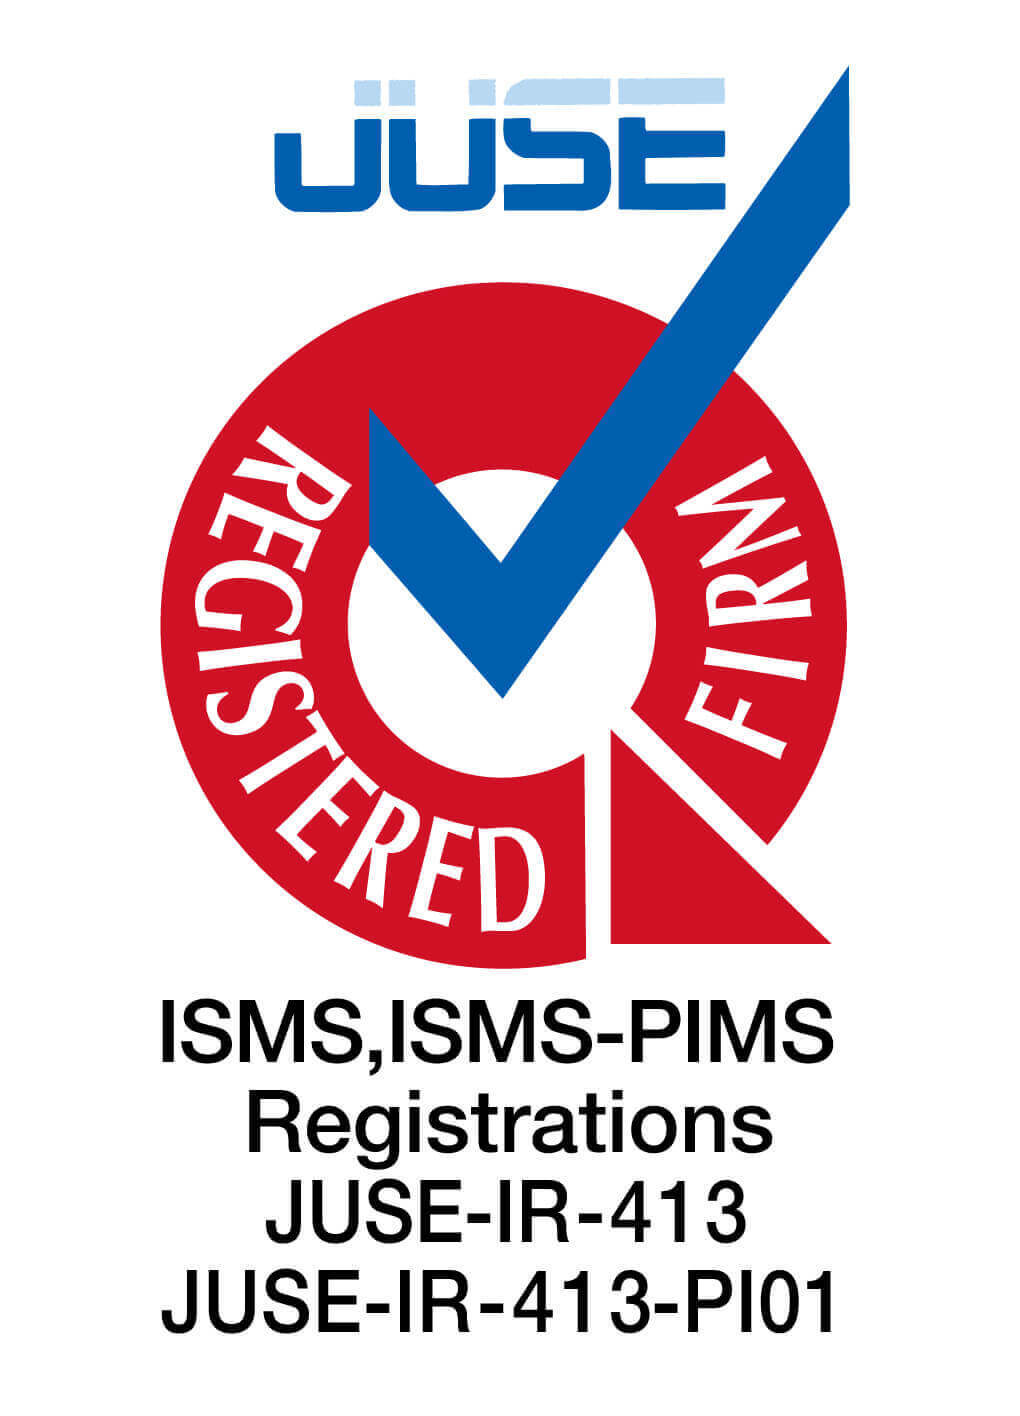 ISMS Registration